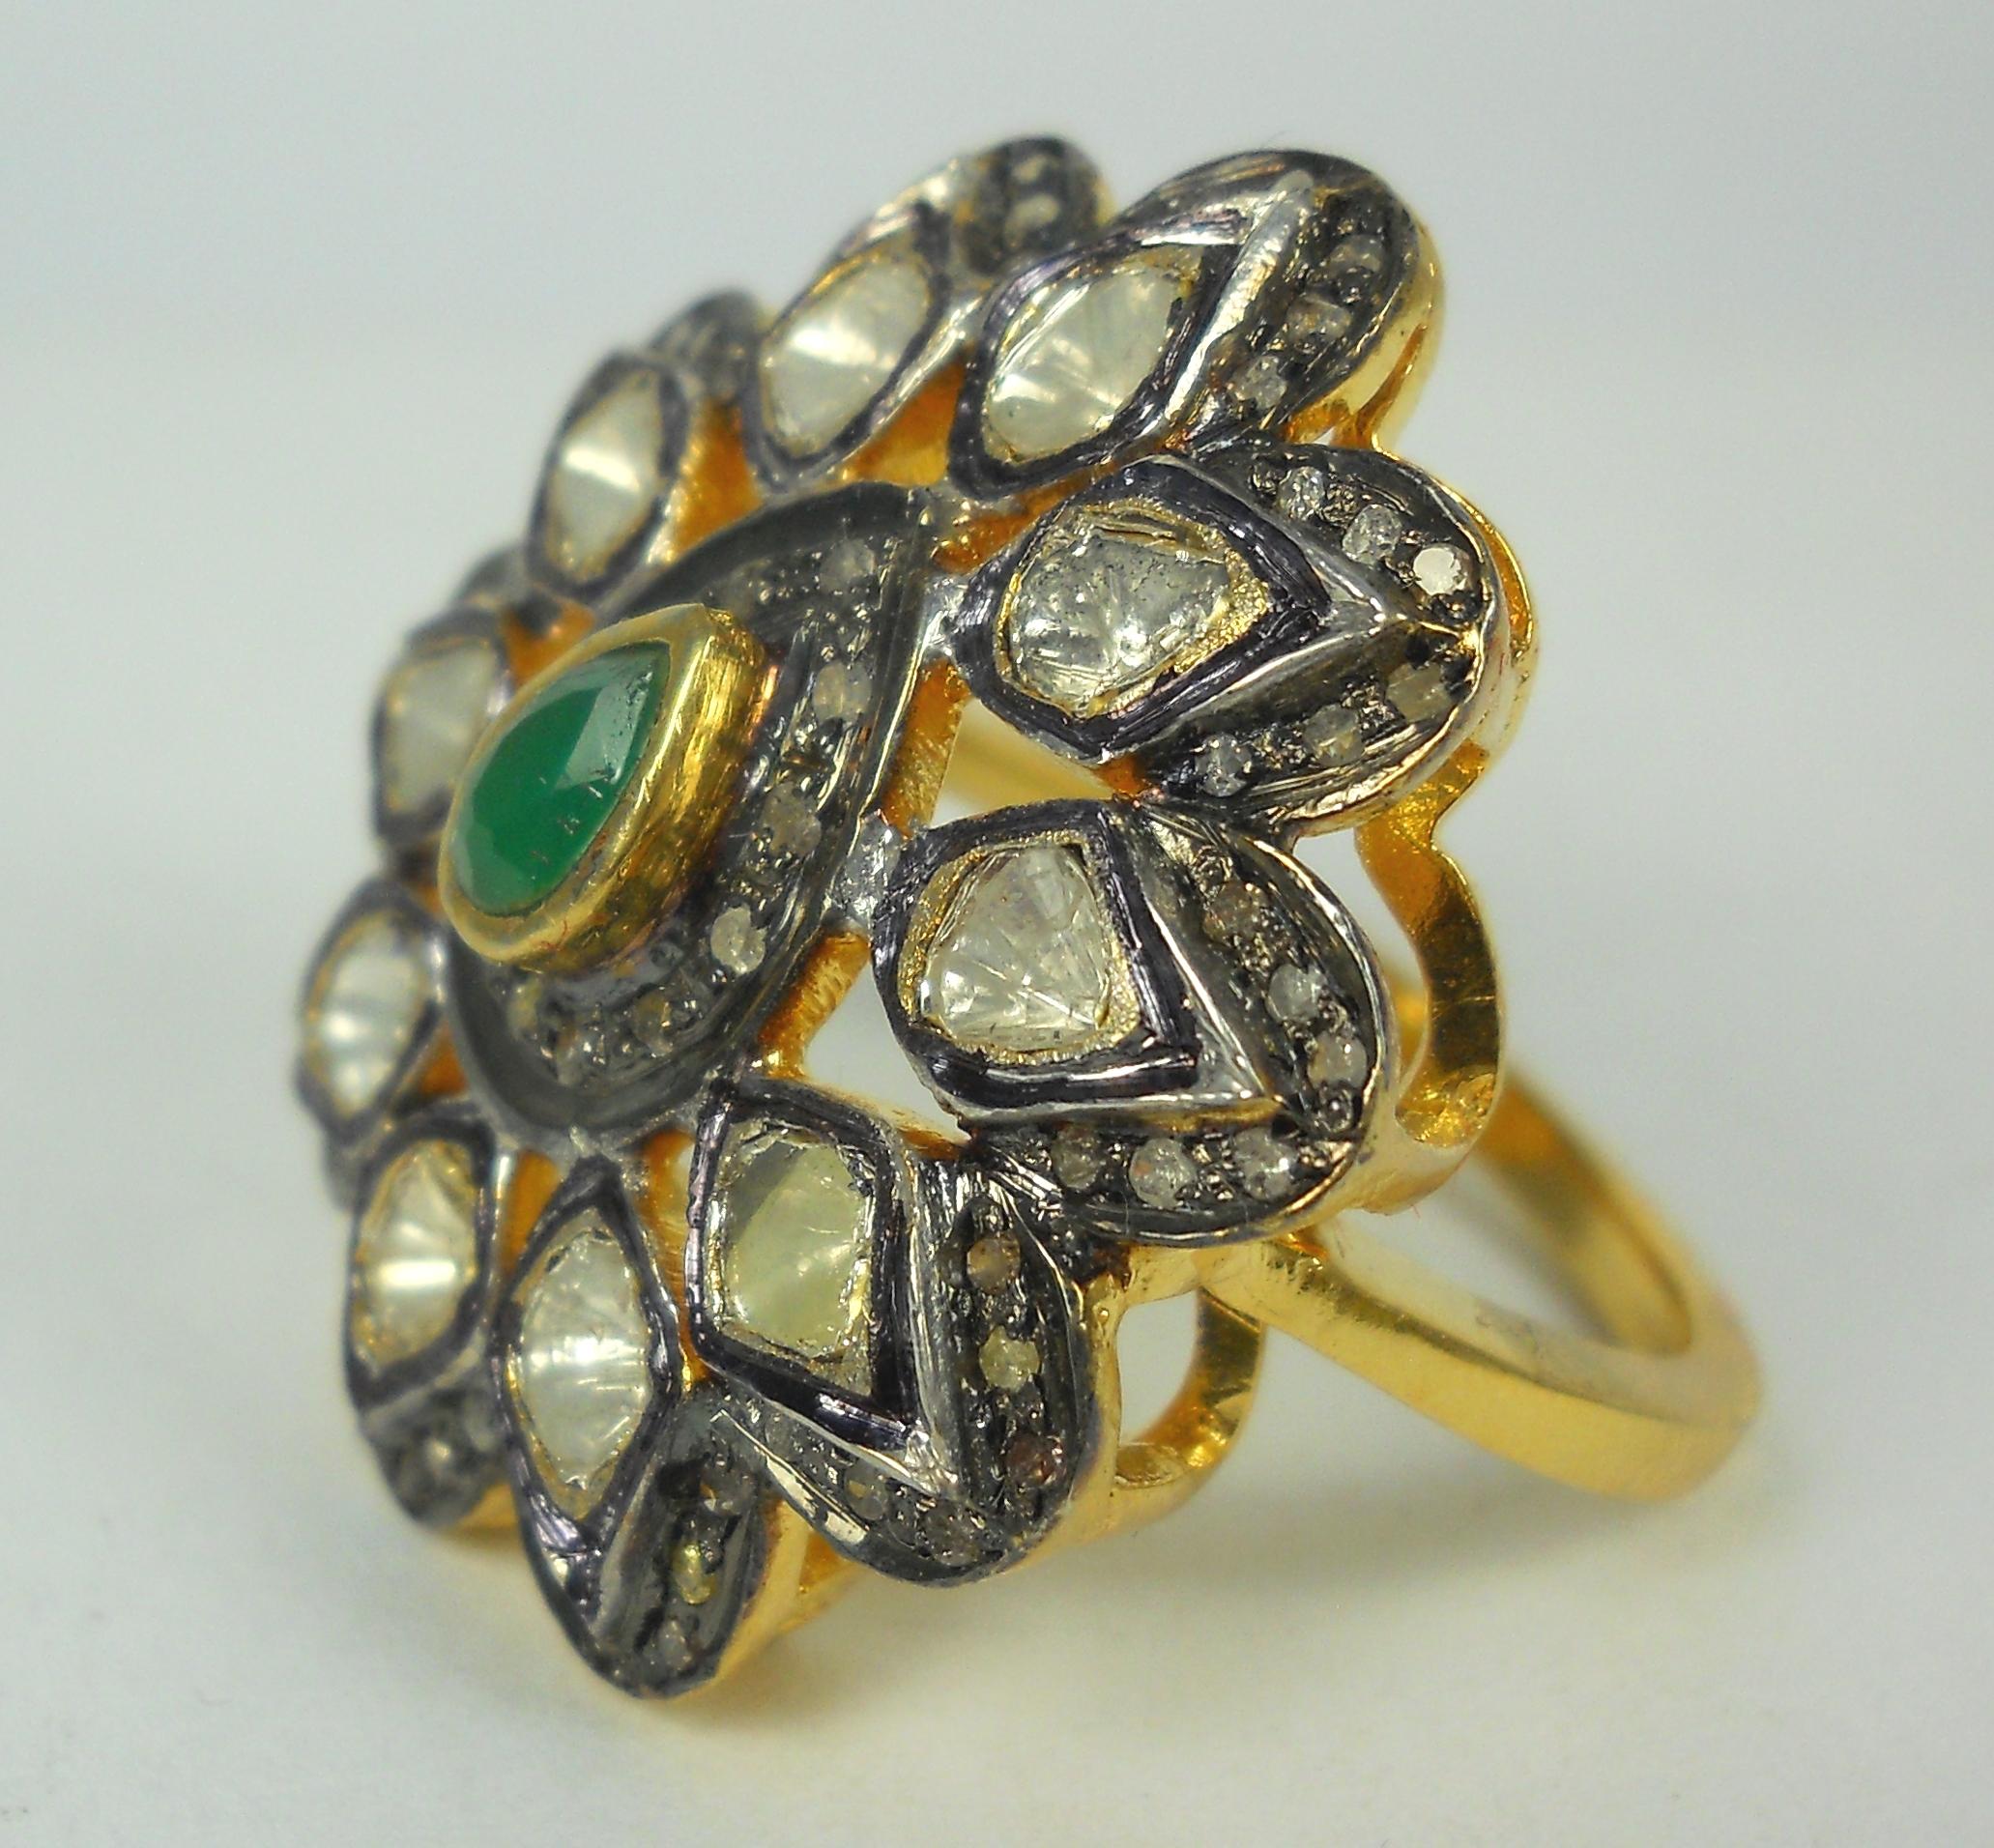 Dieser atemberaubende Ring mit altem viktorianischem Finish ist ein Unikat.
Es besteht aus:
Diamant - Natürlicher ungeschliffener Diamant und Diamant im Rosenschliff
Farbe des Diamanten - gelb getönt
Metall- Silber
Metallreinheit - 925er Silber oder